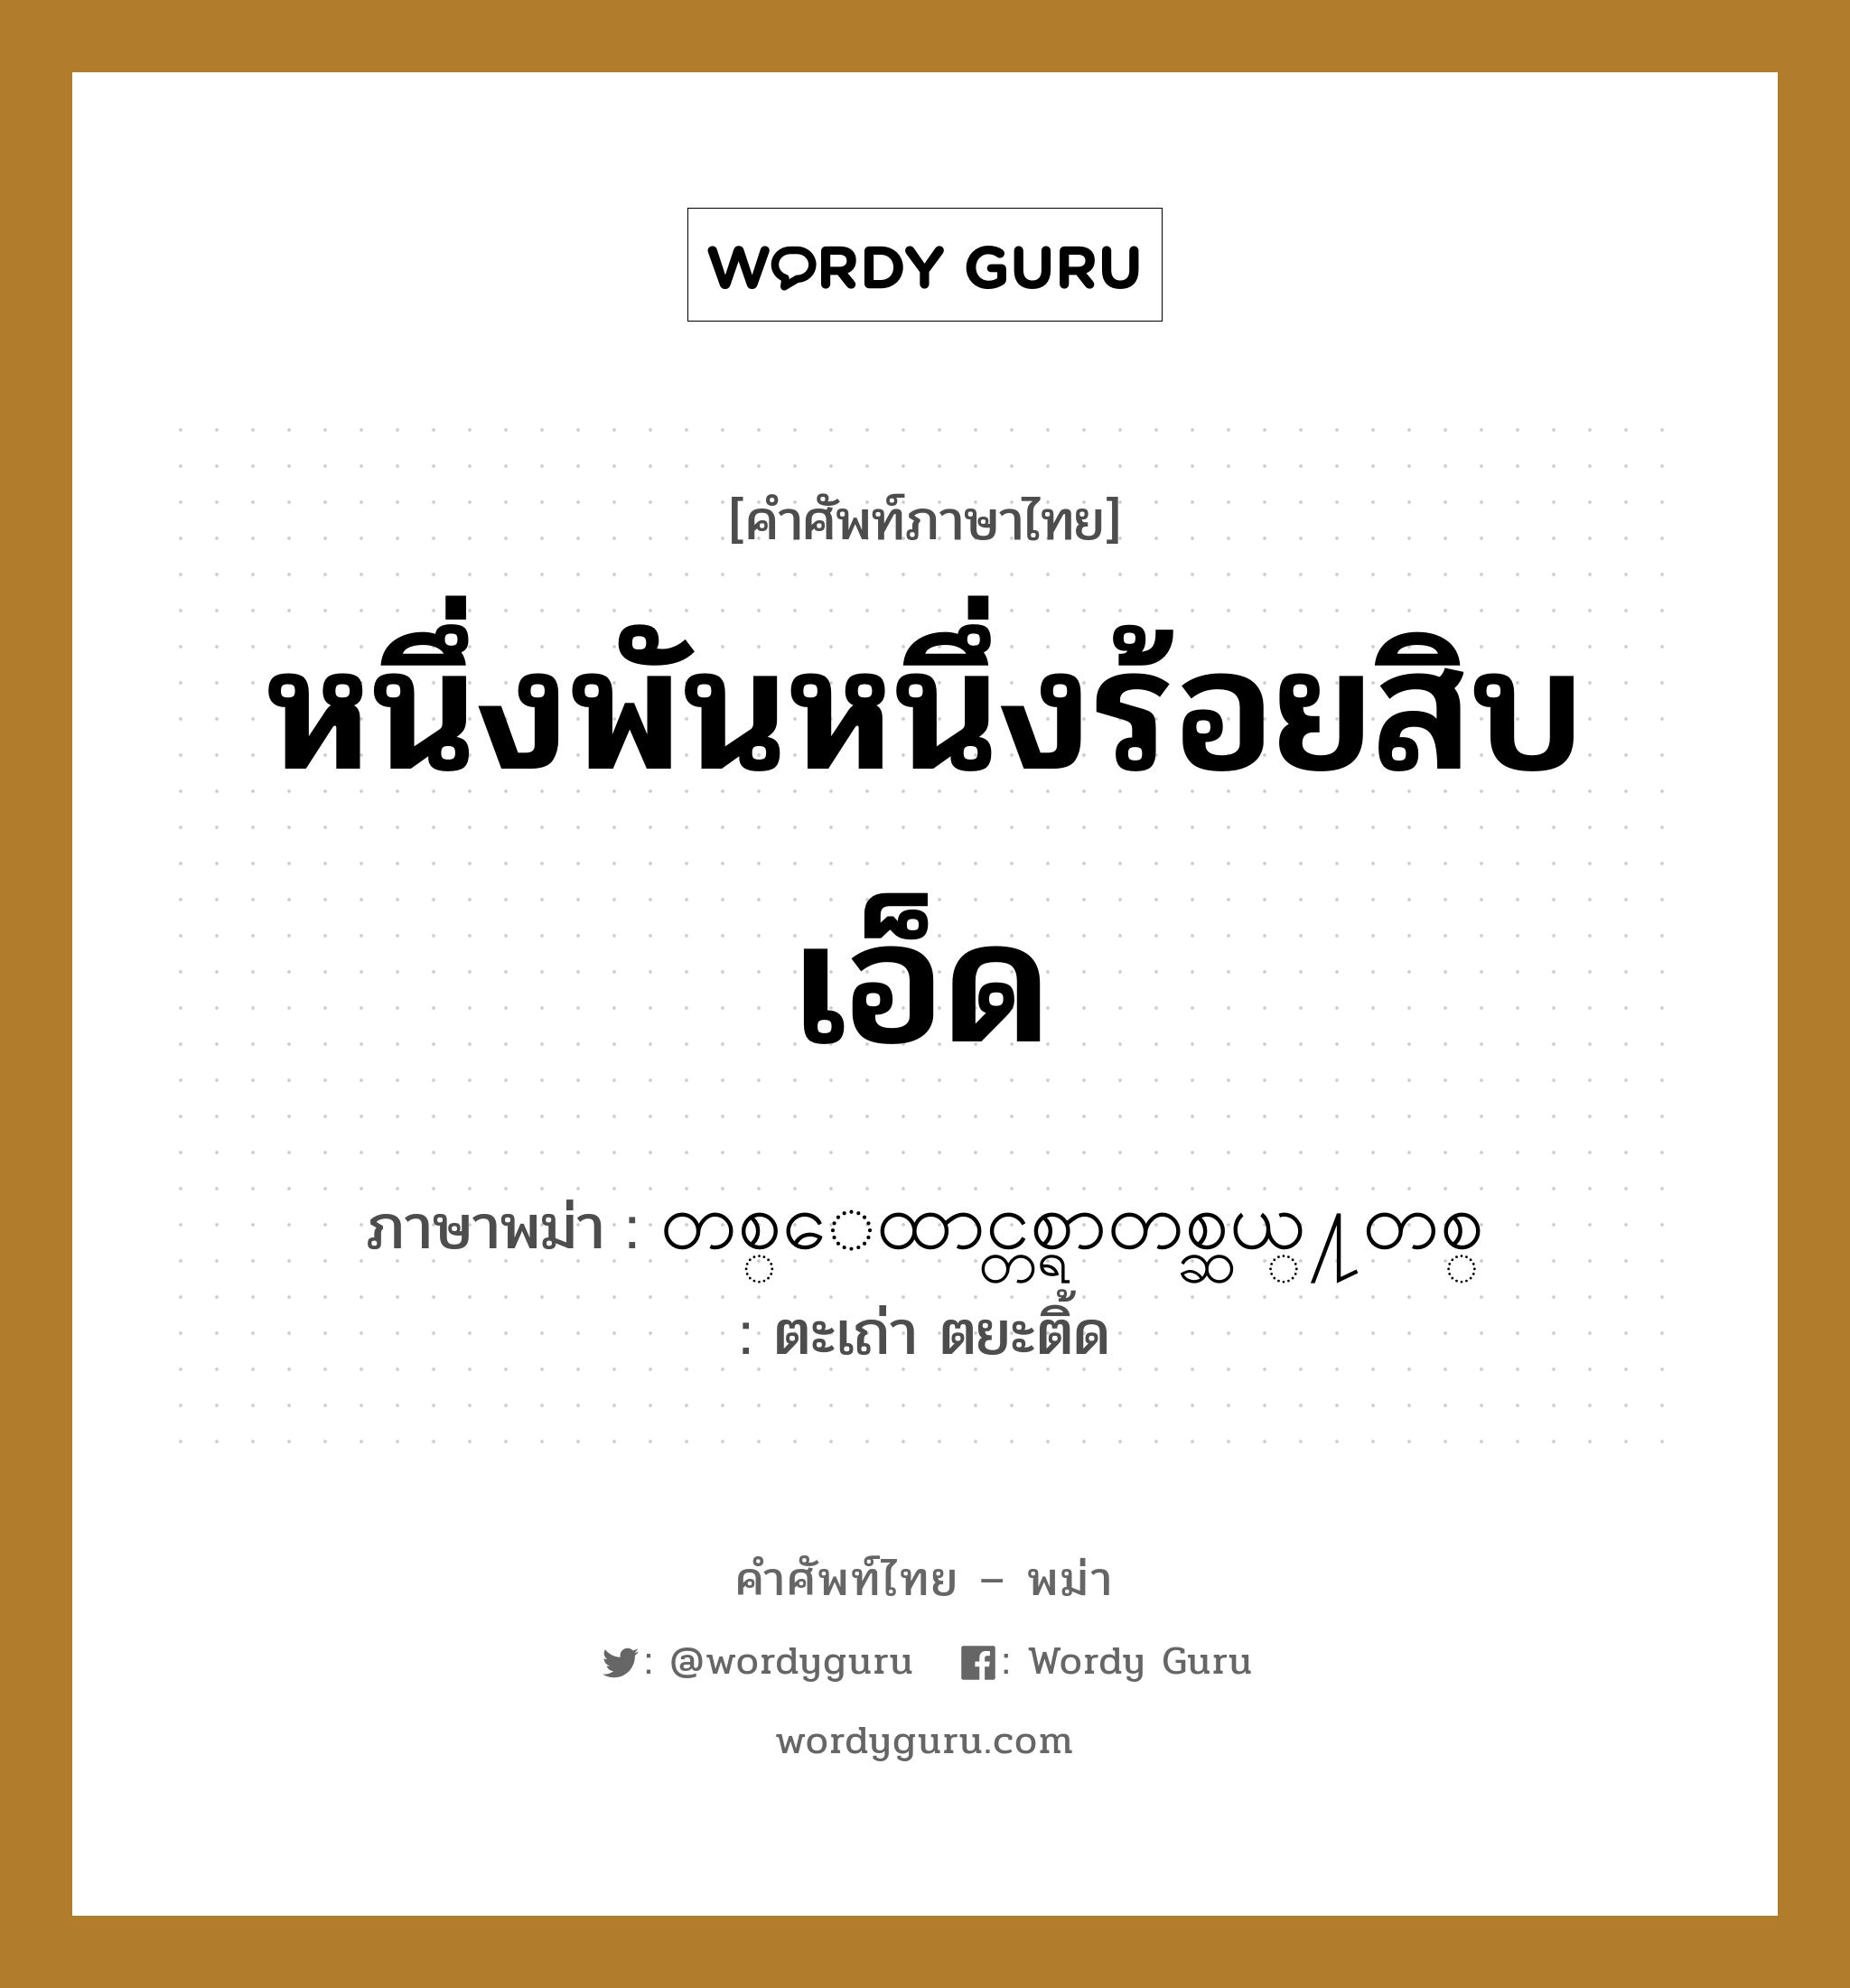 หนึ่งพันหนึ่งร้อยสิบเอ็ด ภาษาพม่าคืออะไร, คำศัพท์ภาษาไทย - พม่า หนึ่งพันหนึ่งร้อยสิบเอ็ด ภาษาพม่า တစ္ေထာင္တစ္ရာတစ္ဆယ္႔တစ္ หมวด หมวดตัวเลข ตะเถ่า ตยะติ้ด หมวด หมวดตัวเลข